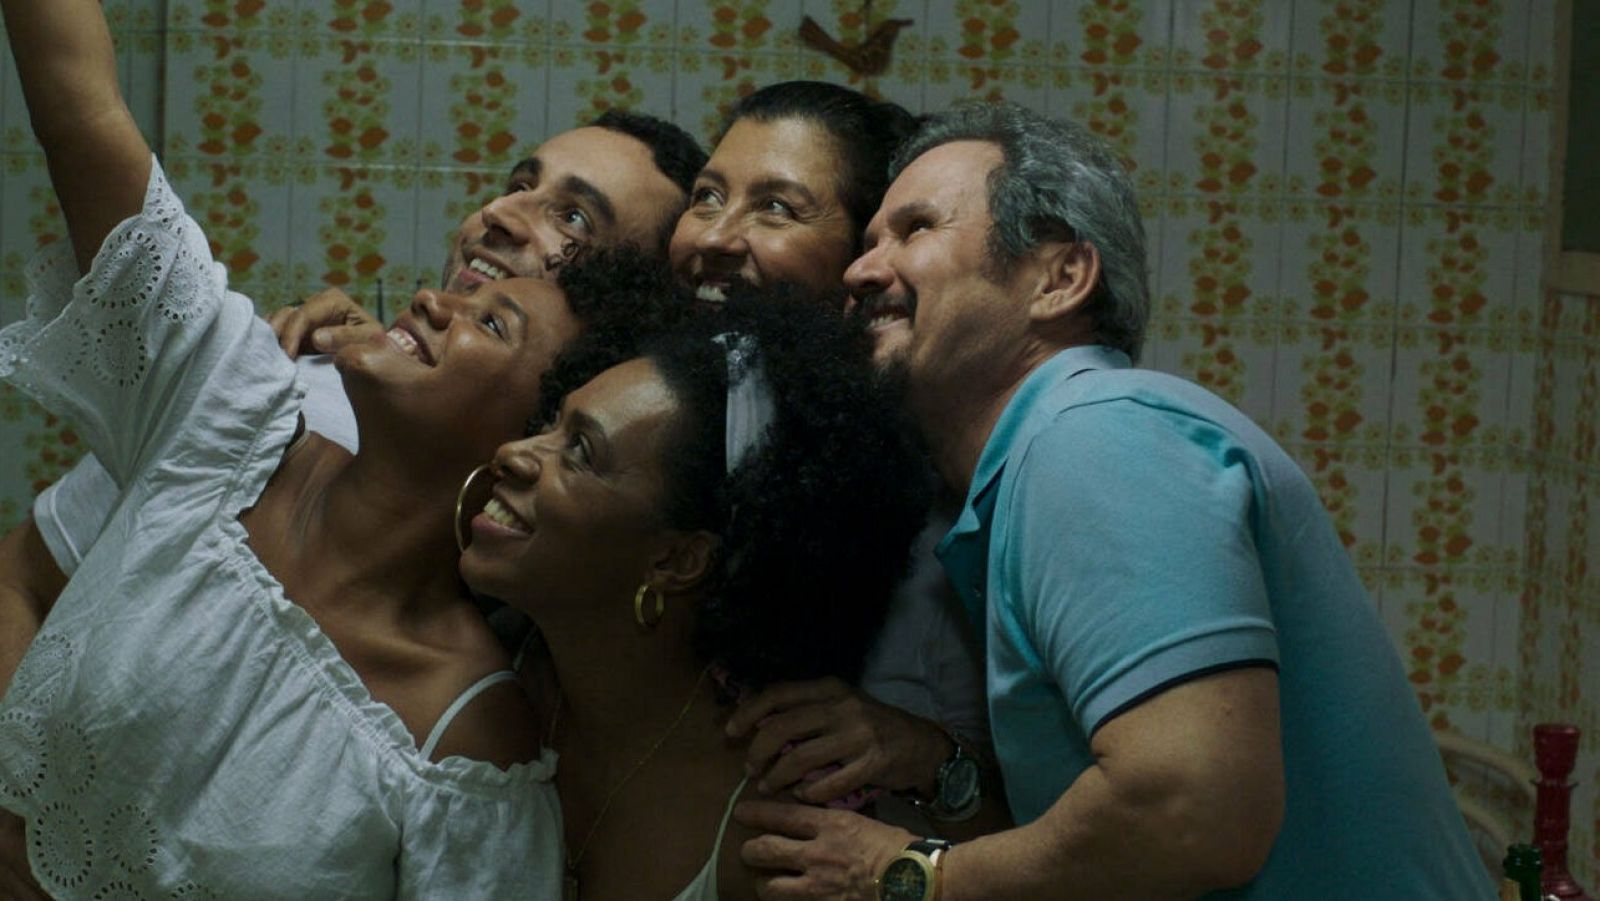 Estreno de la película "Tres veranos", la "Parásitos" brasileña